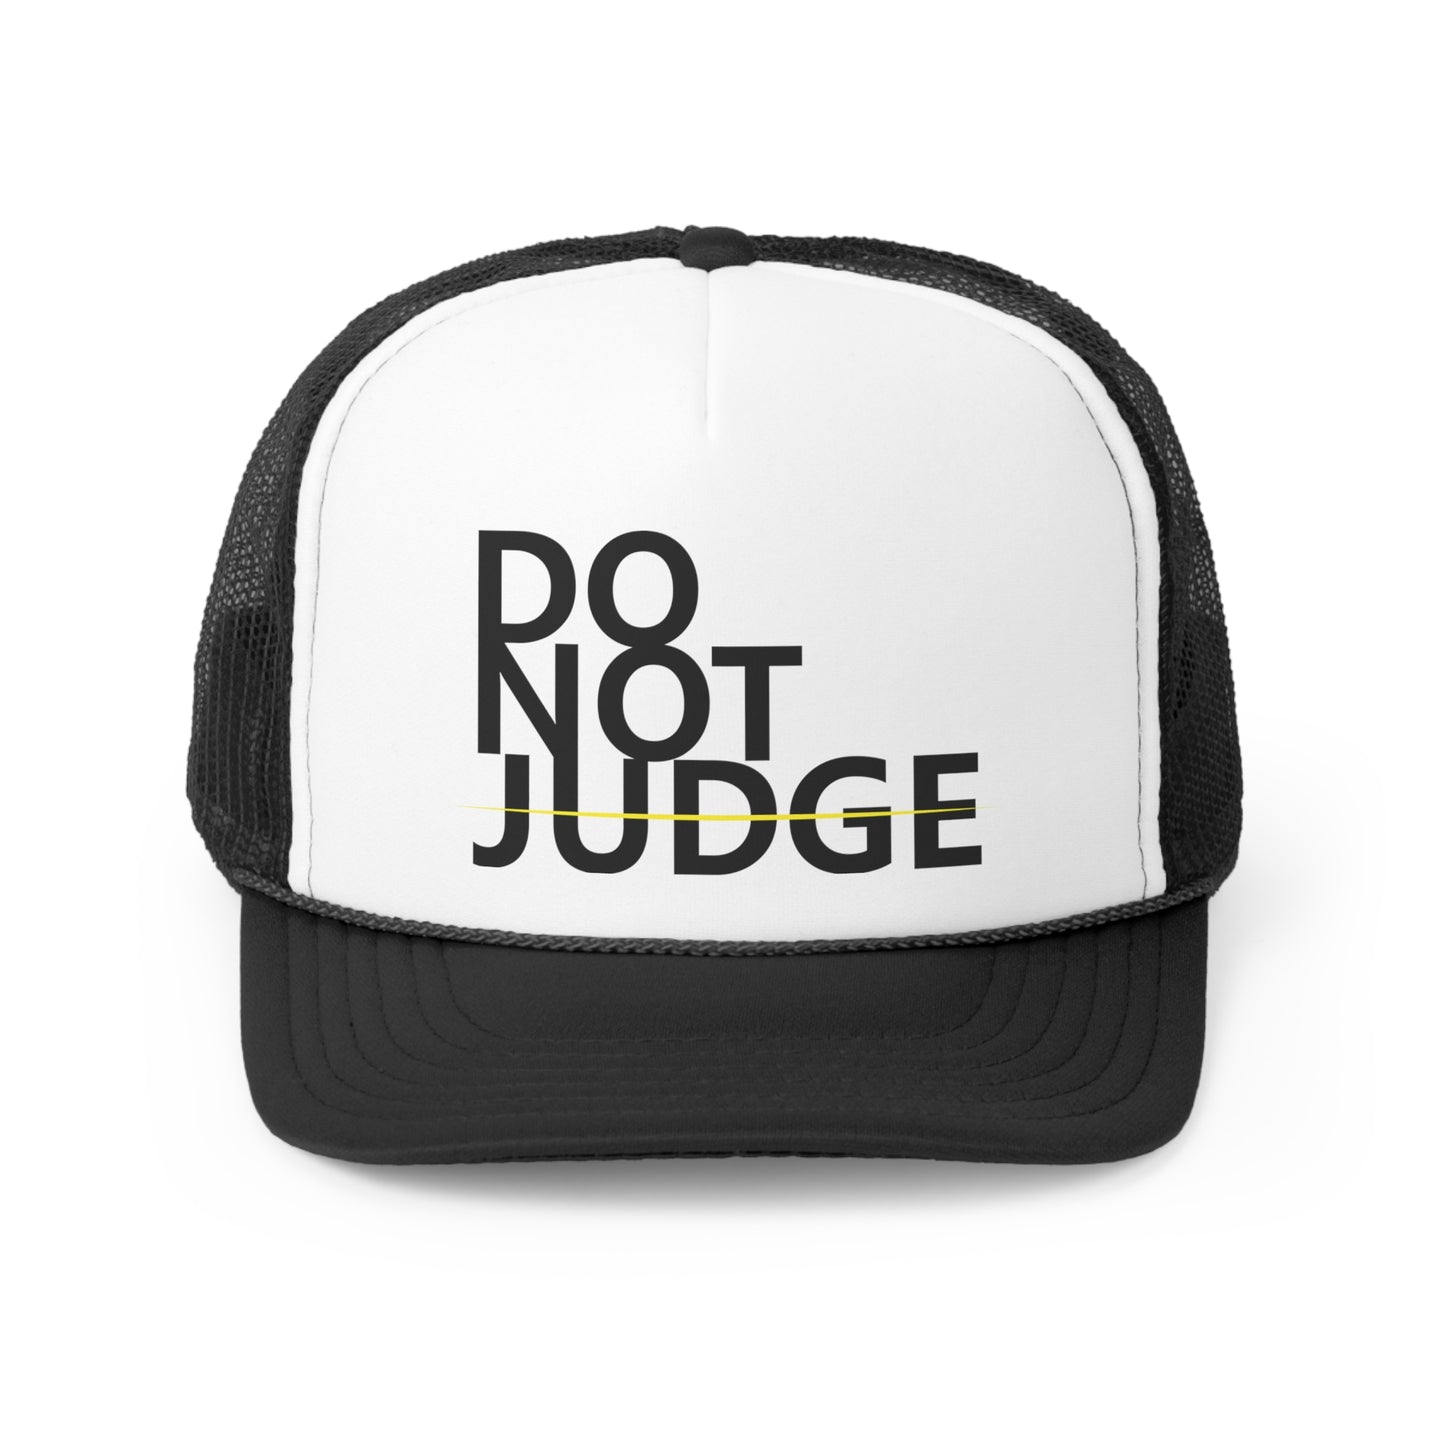 DO NOT JUDGE TRUCKER CAPS